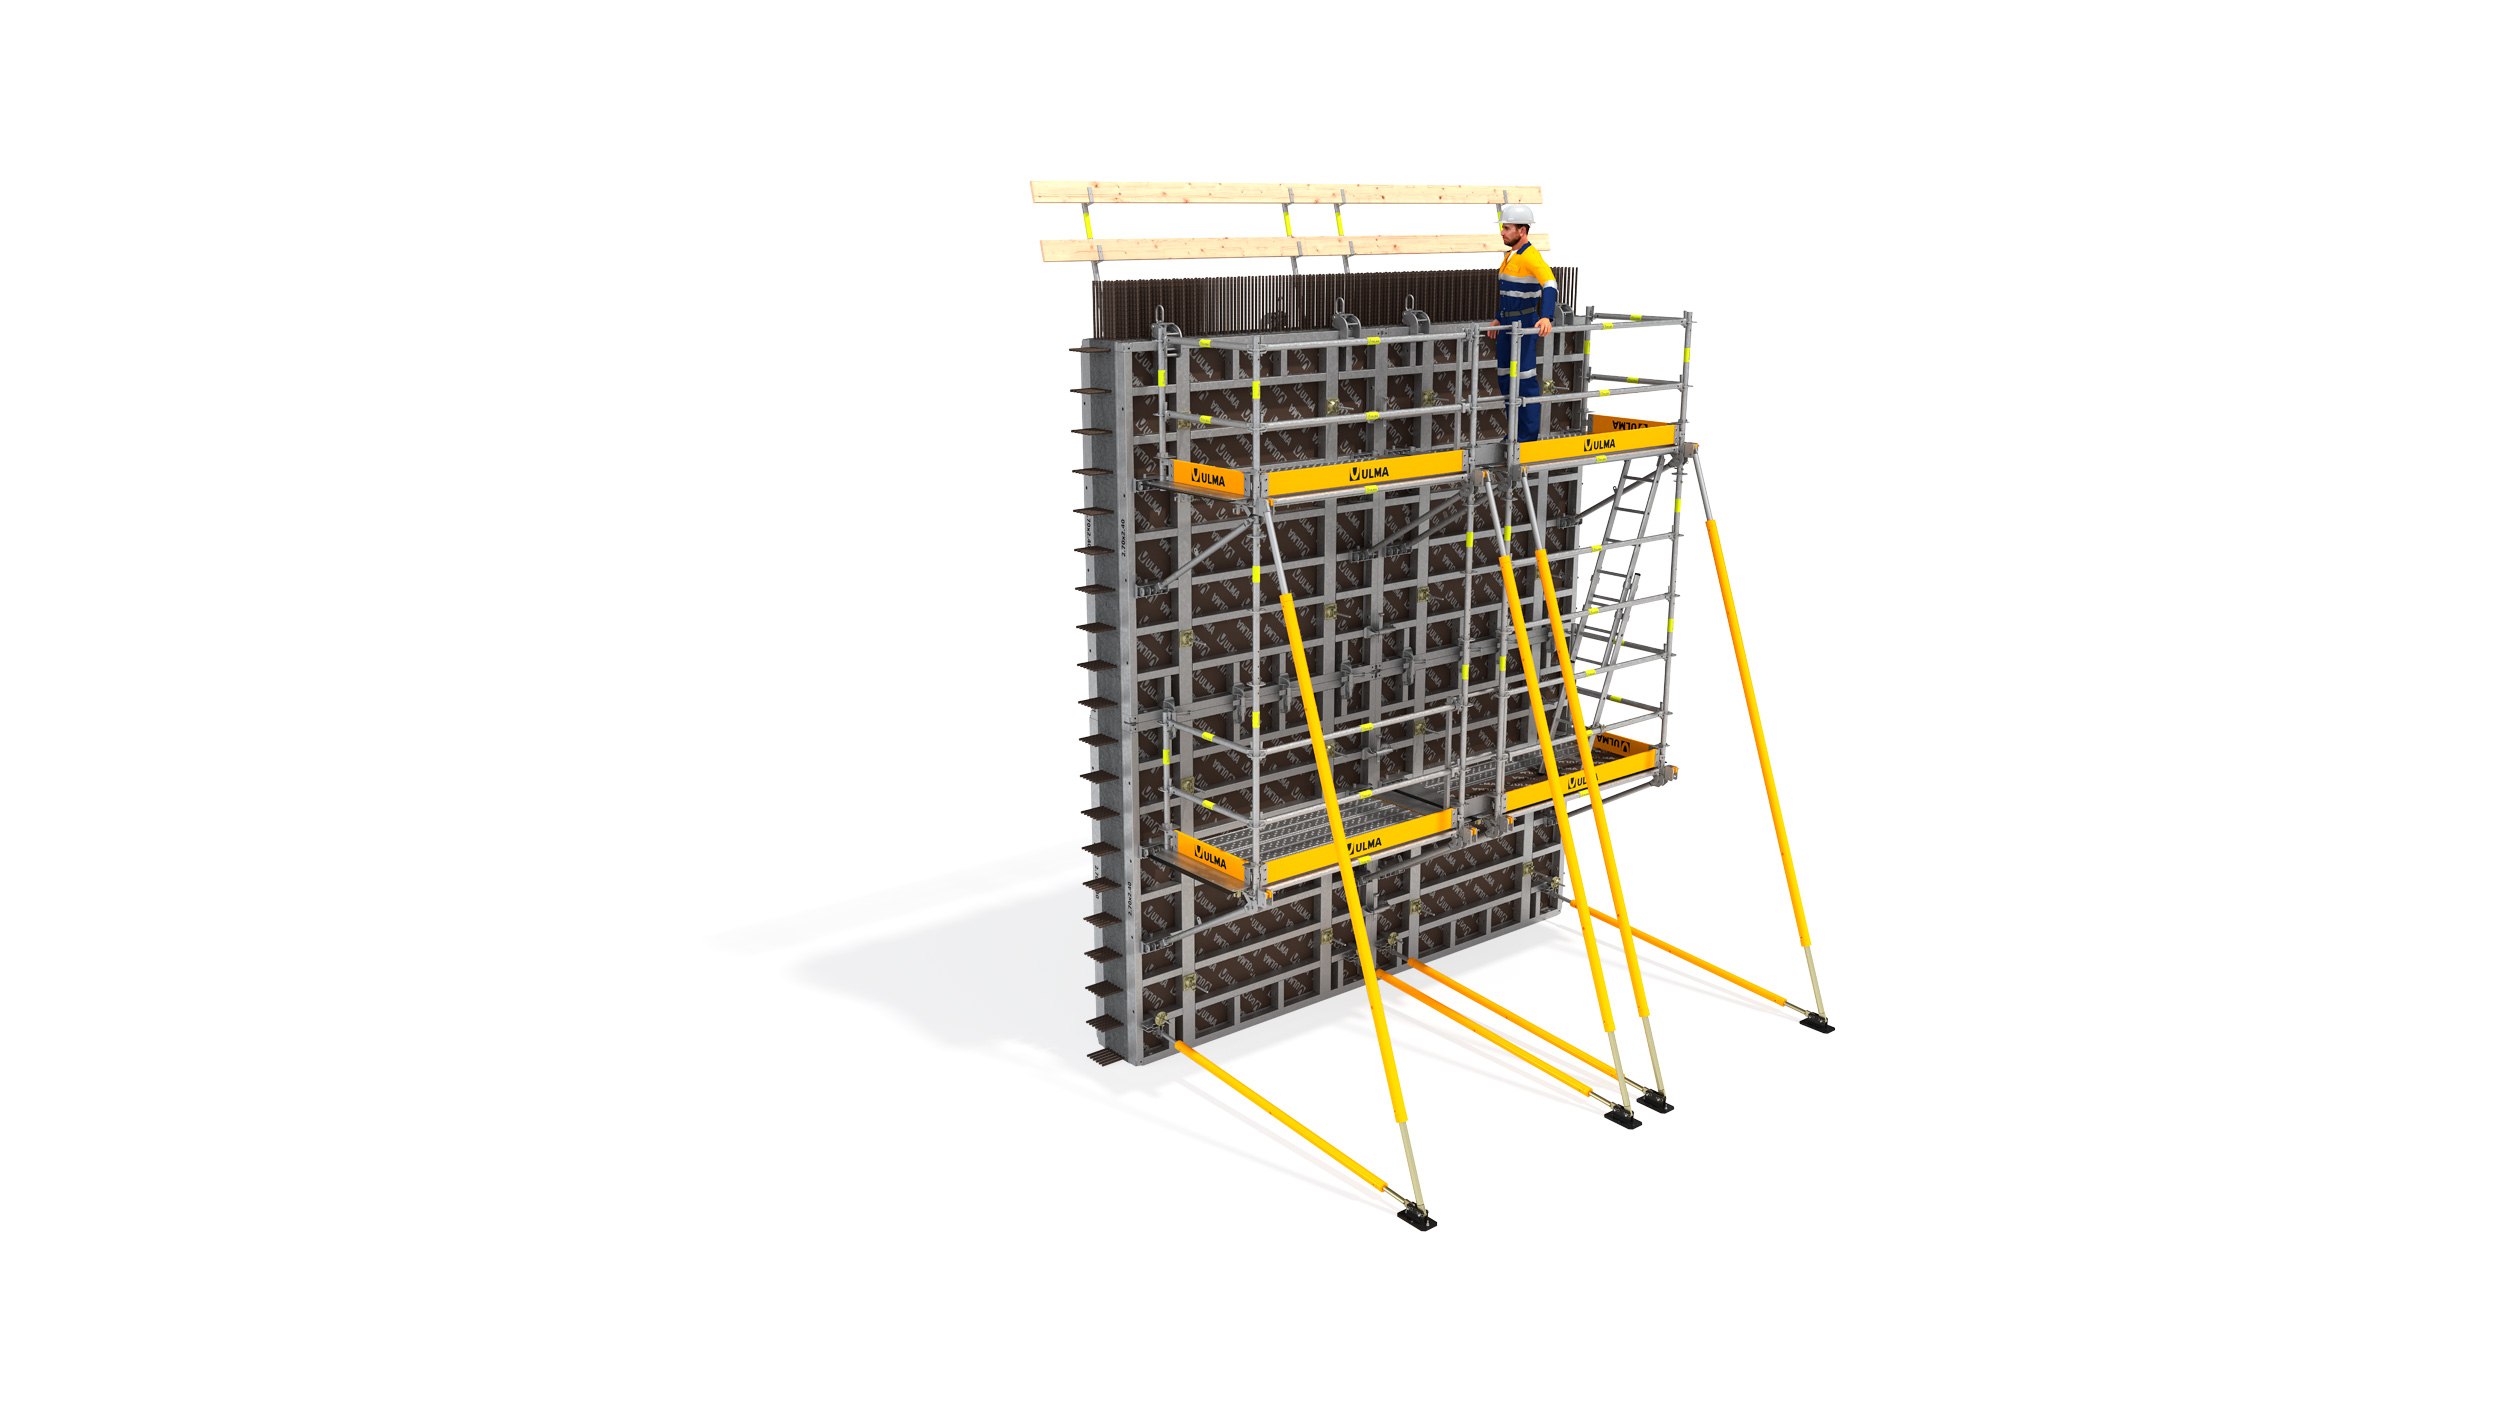 Plataforma de seguridad modular, adaptable a diferentes geometrías. Se puede montar en el suelo. De fácil transporte y almacenaje.